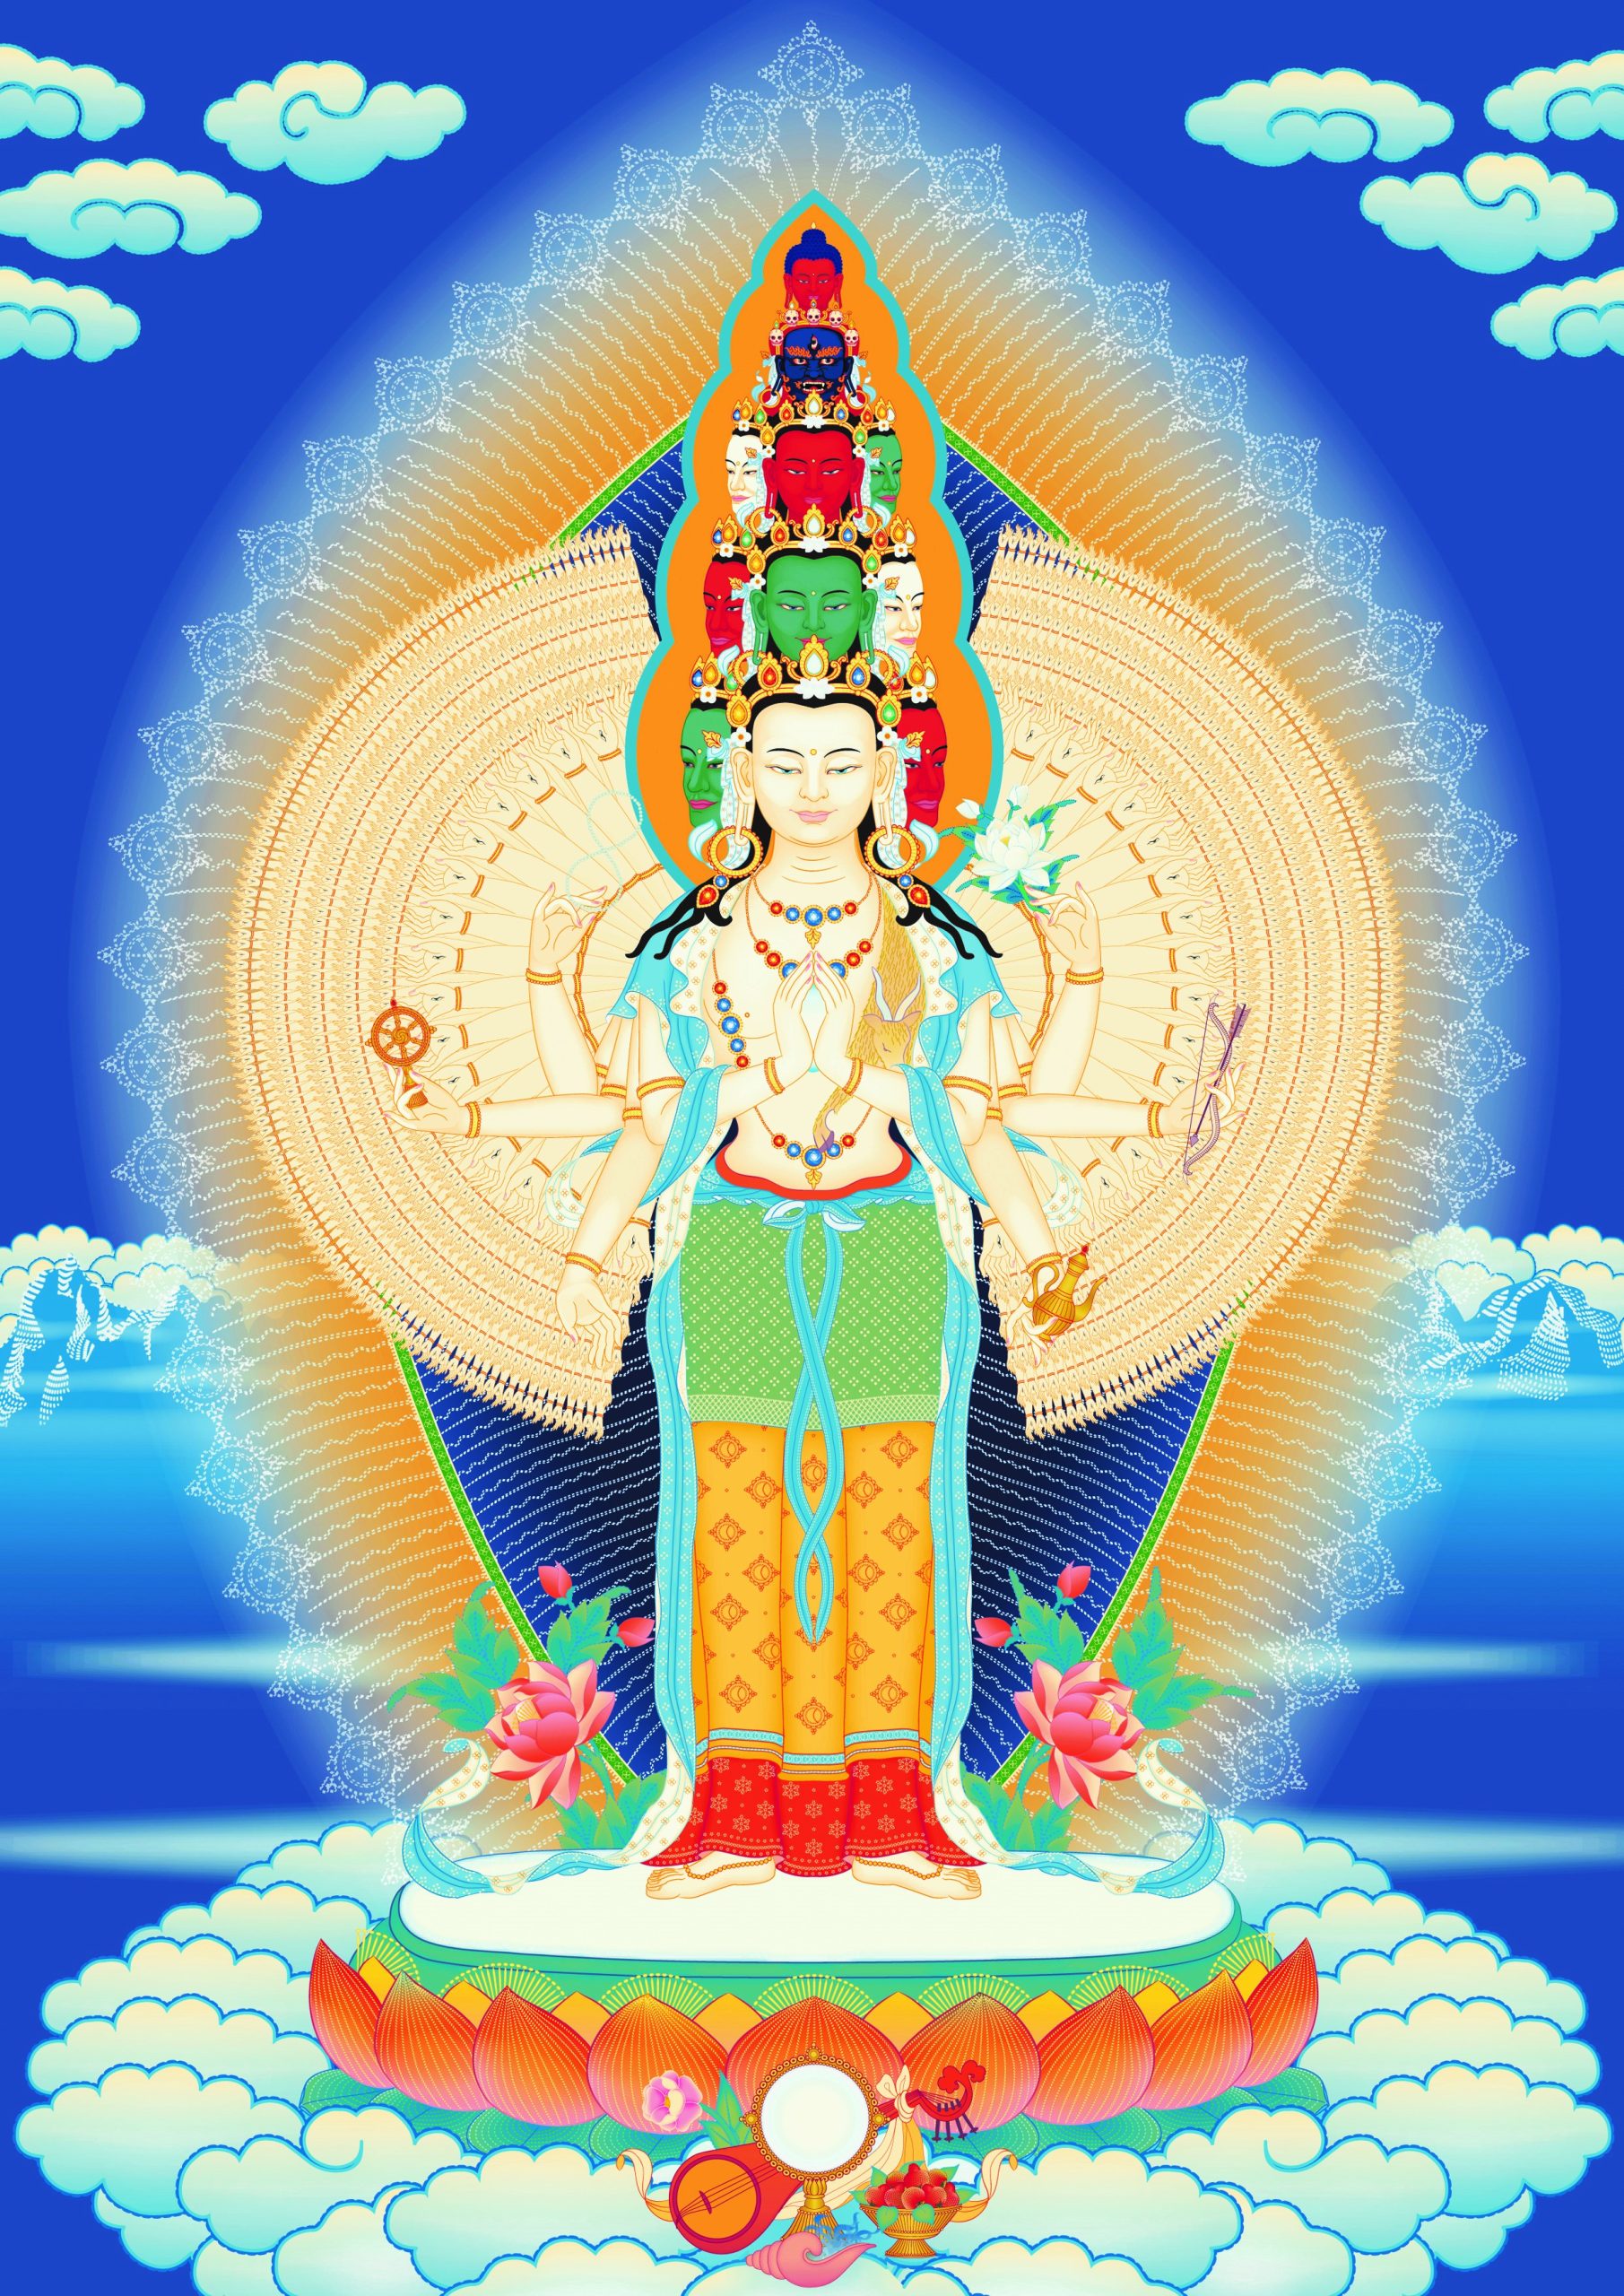 Avalokiteshvara 1000-armed hires